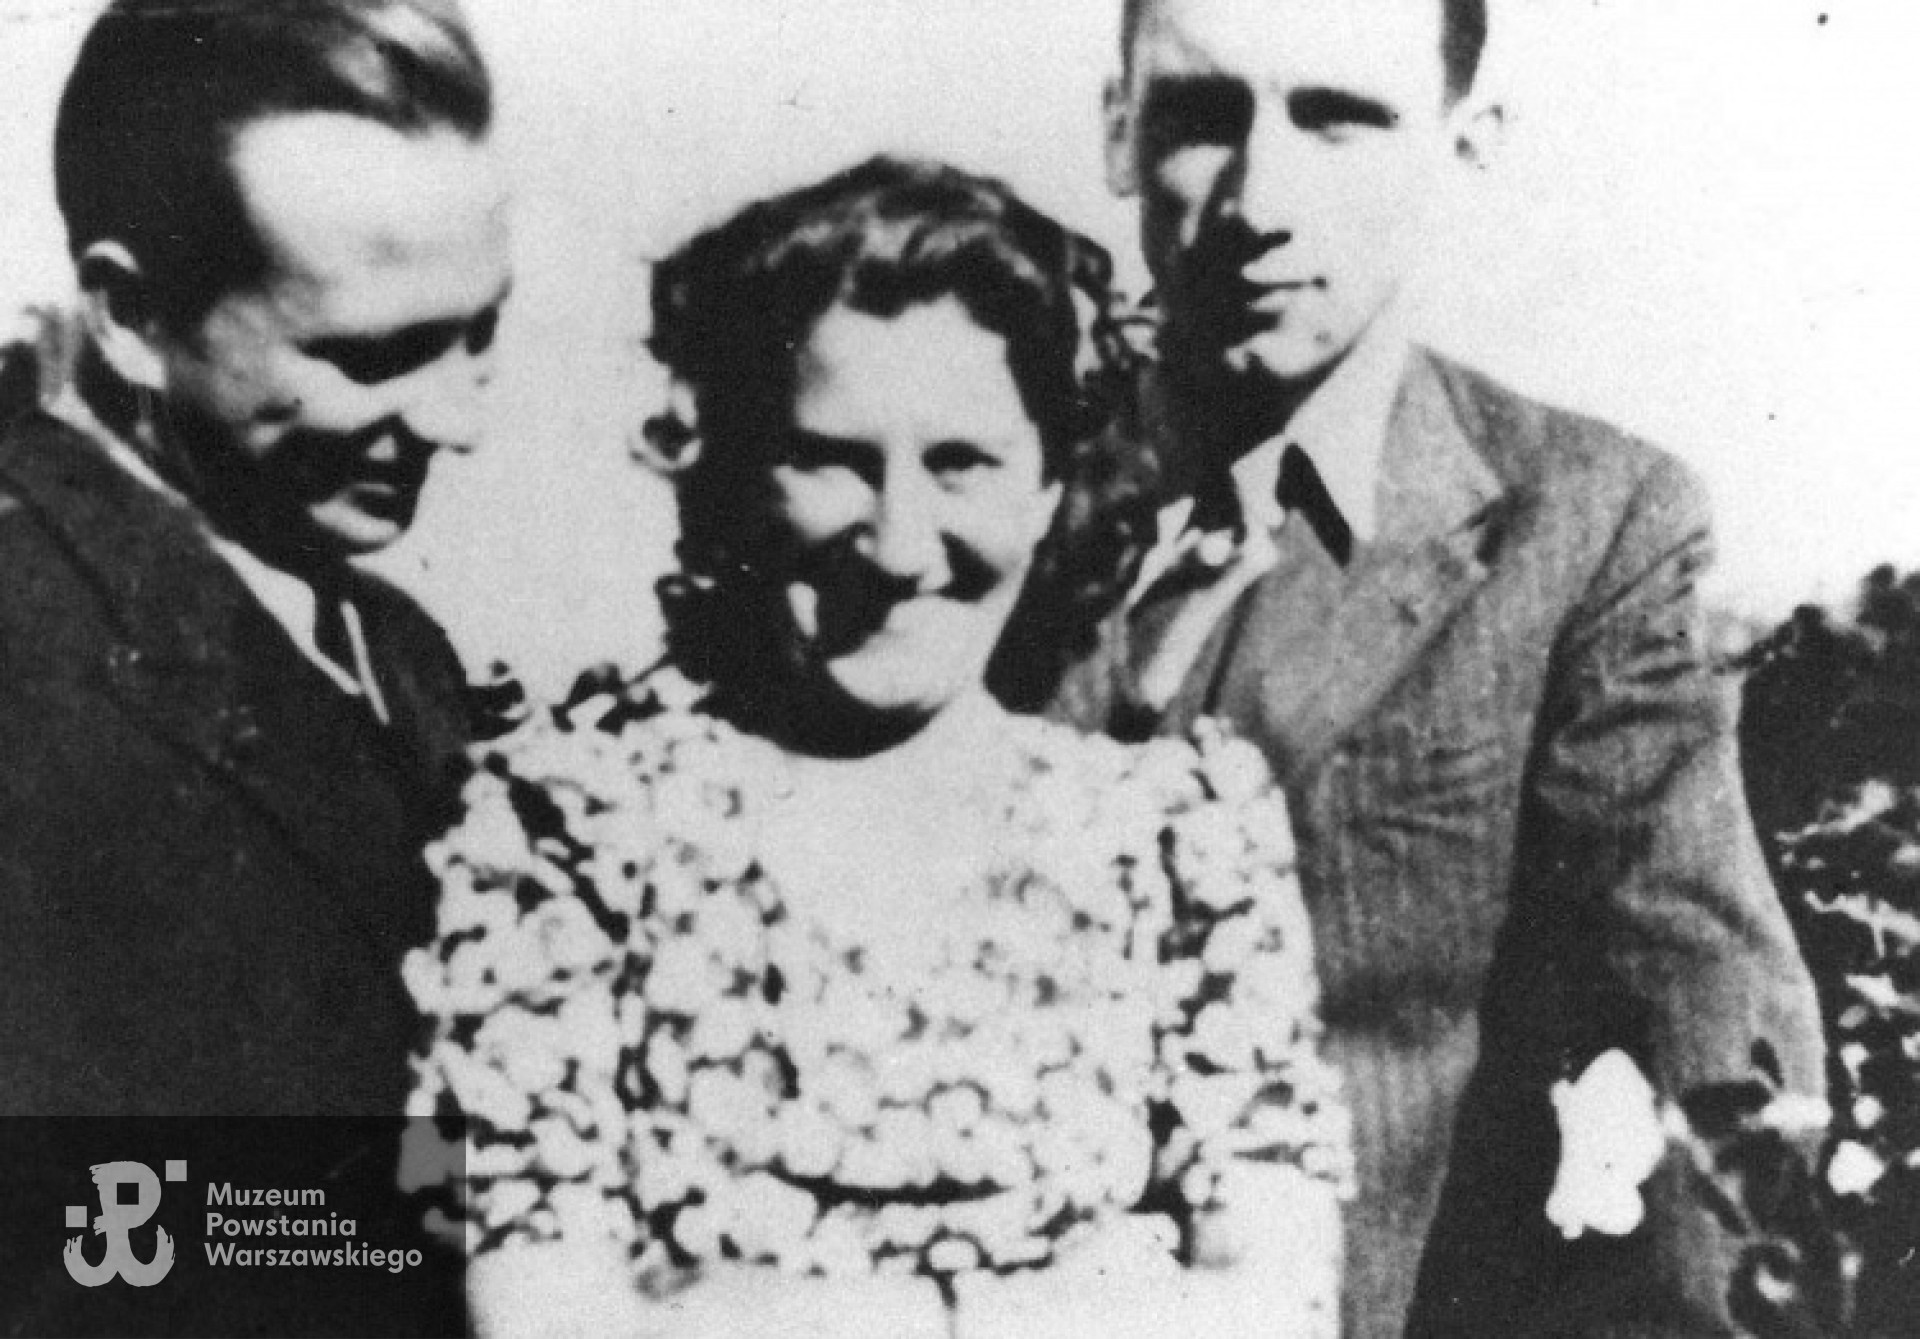 Od lewej stoją: Wiktor Rymszewicz; Irena Kiernacka - narzeczona Zygmunta, Zygmunt Rymszewicz. Lato 1943 r. Fot. Bohdan Hryniewicz, archiwum rodzinne.